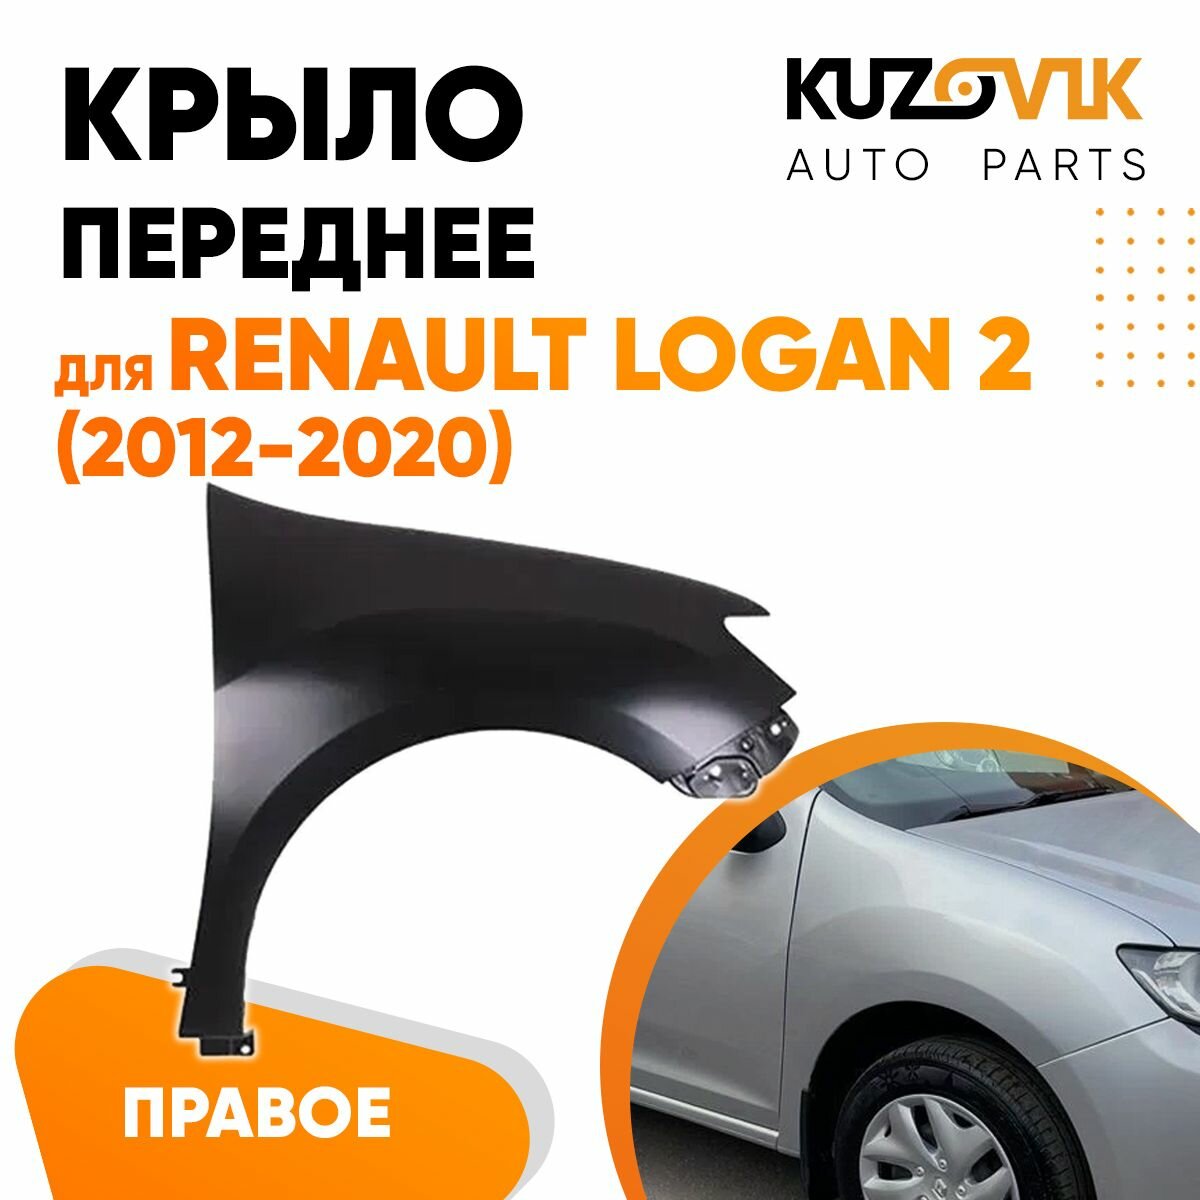 Крыло переднее правое для Рено Логан Renault Logan 2 (2012-2020) без отверстия под повторитель